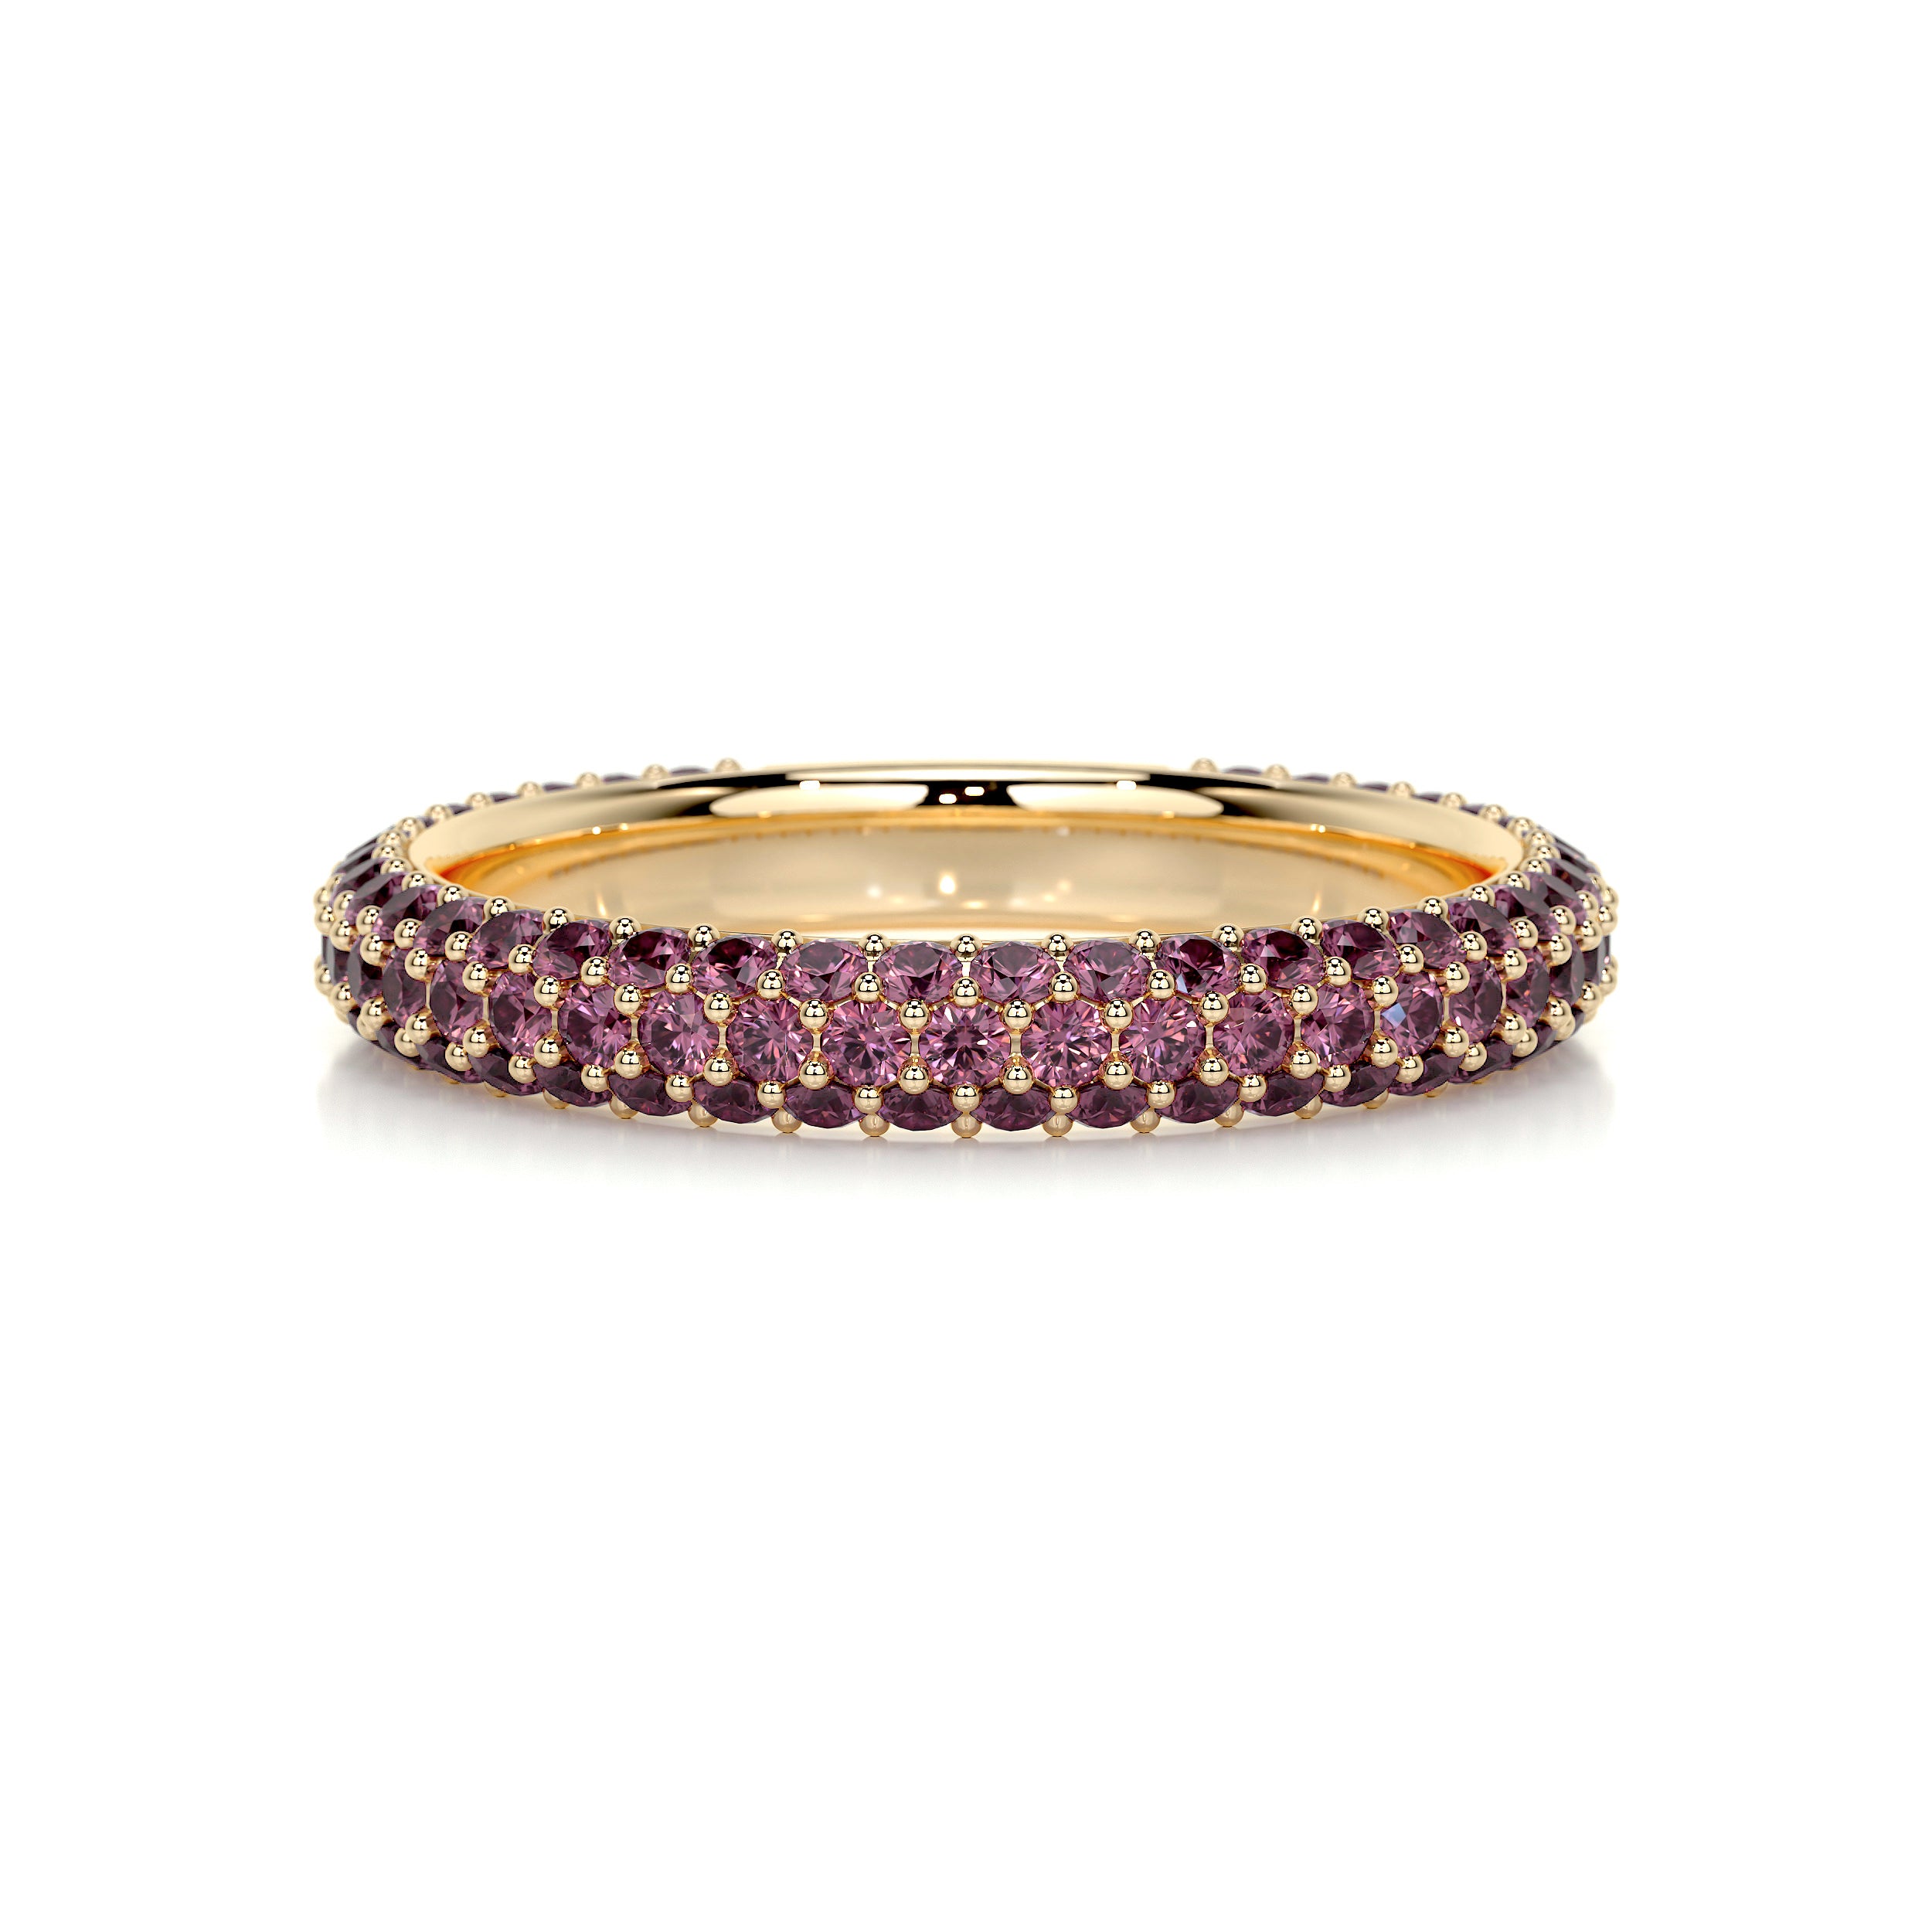 Emma Pink Gemstone Wedding Ring   (1.25 Carat) - 18K Yellow Gold